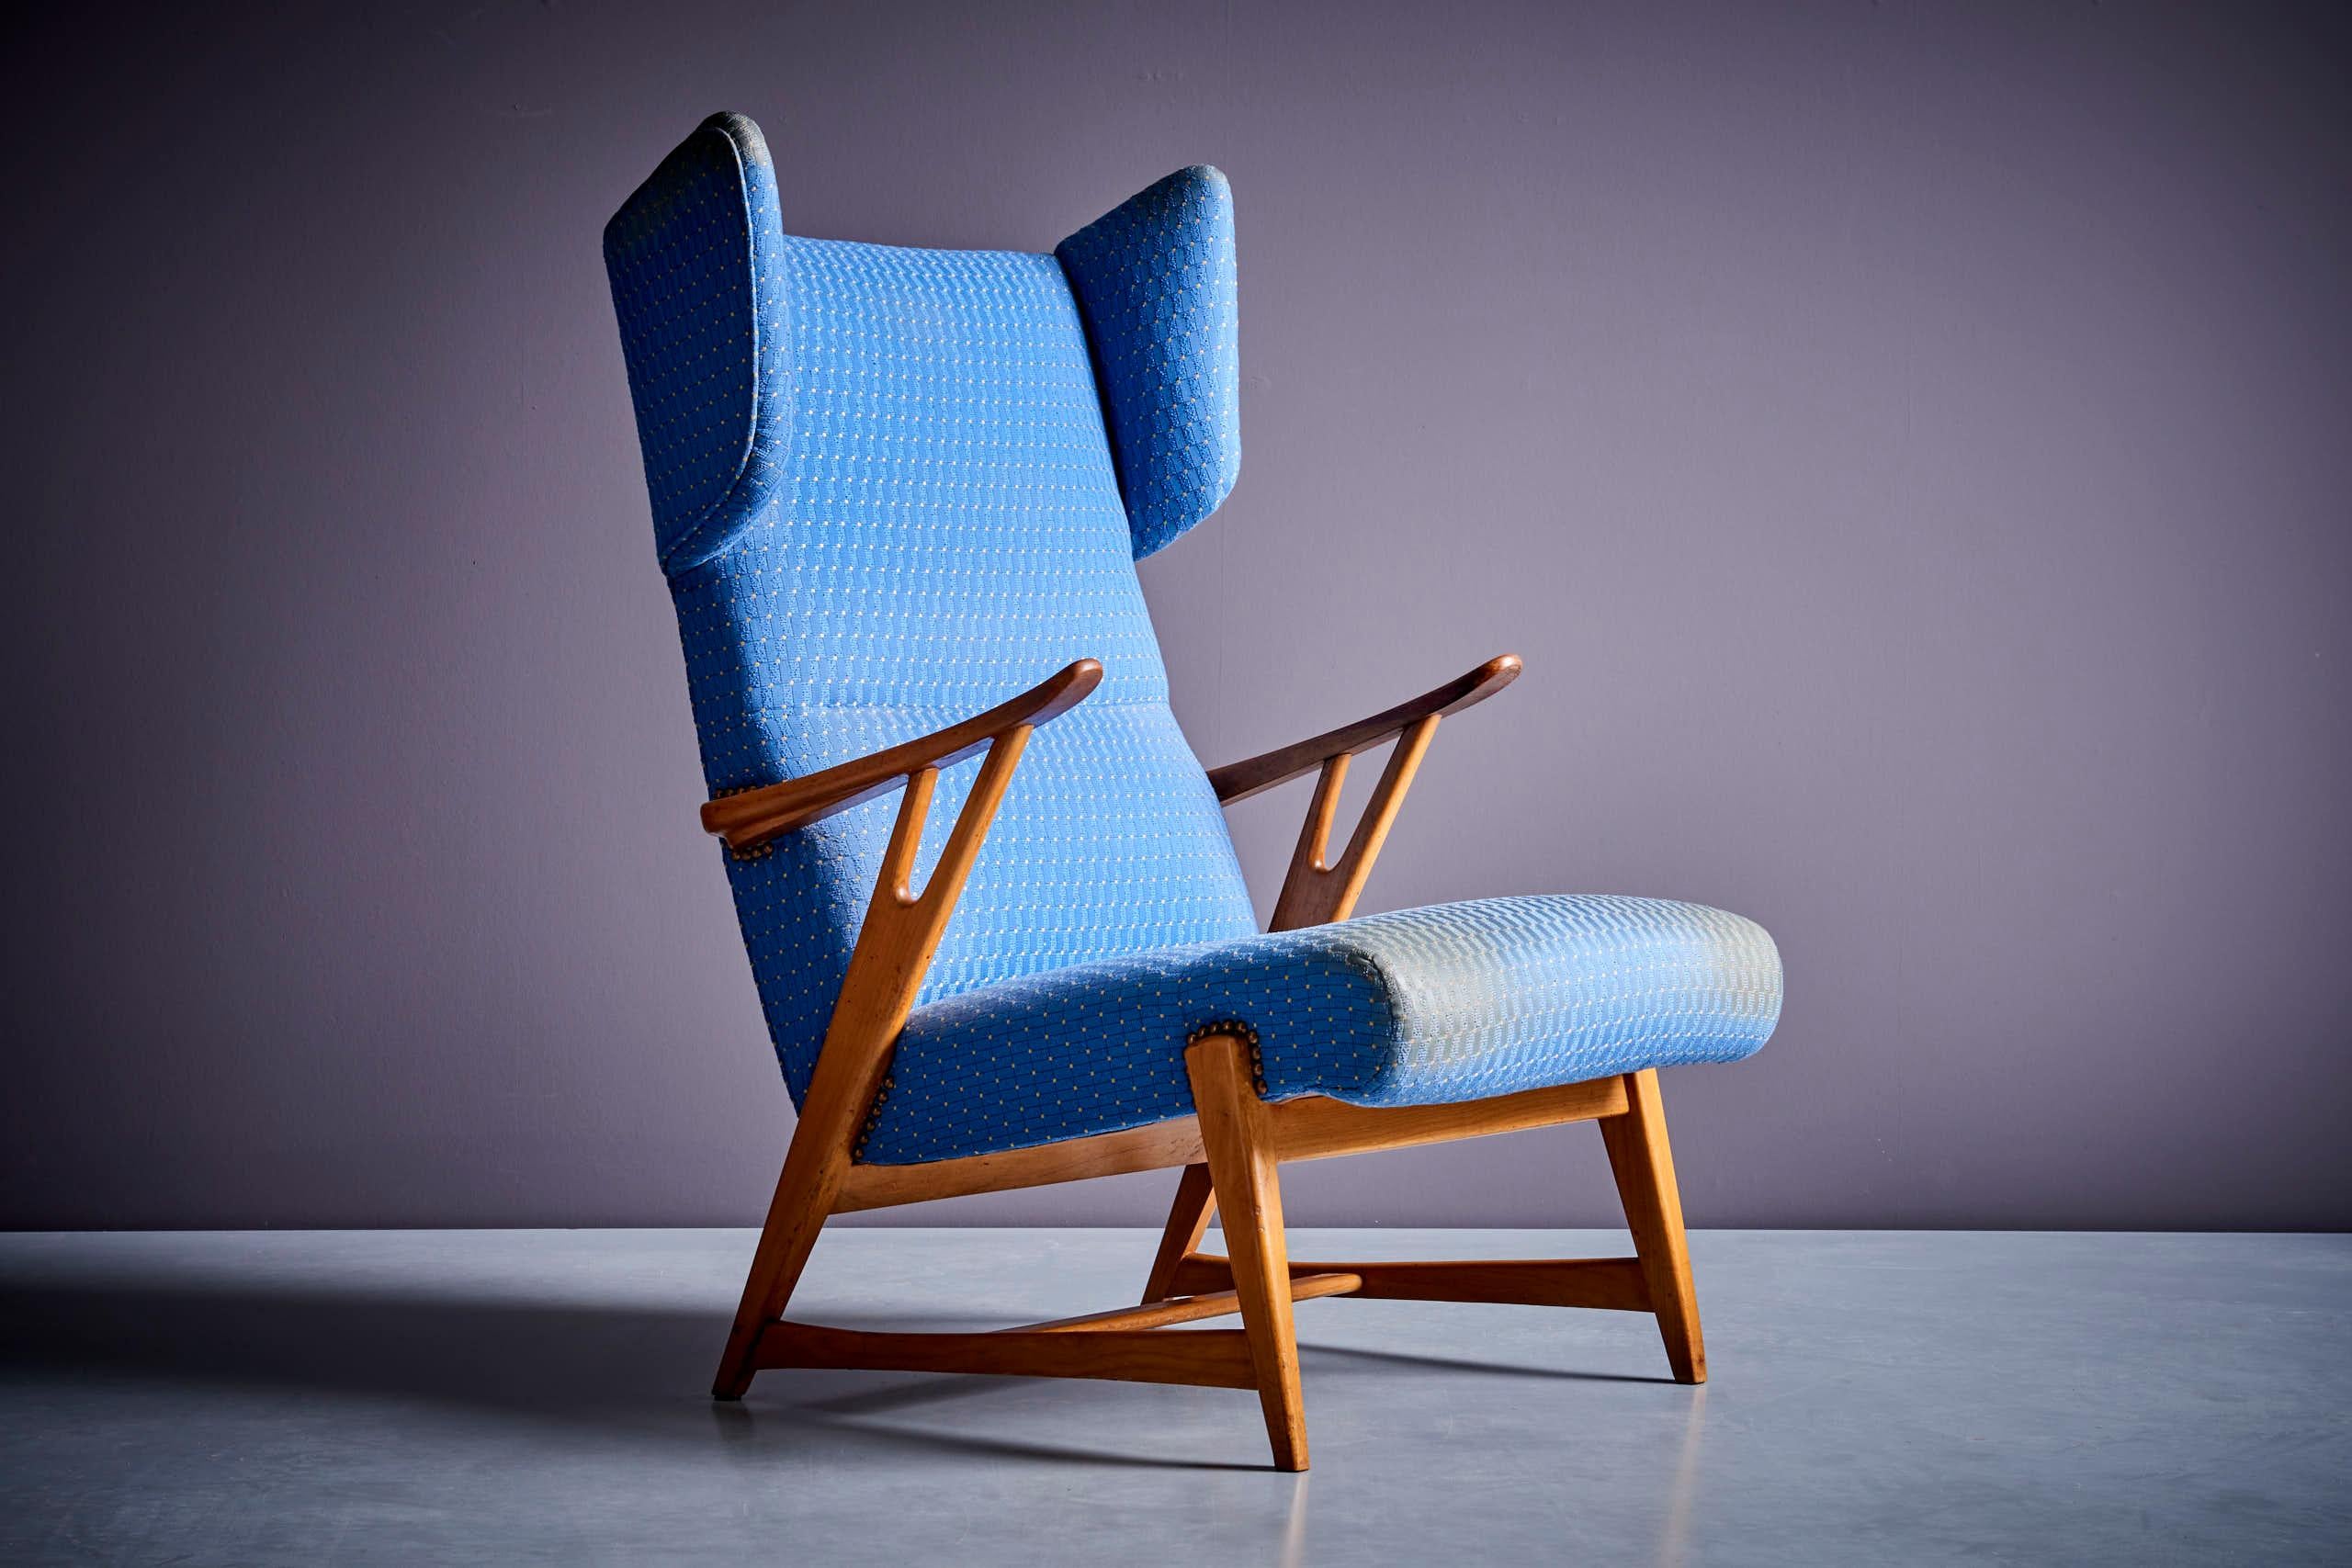 Geflügelter italienischer Loungesessel mit hoher Rückenlehne in der Art von Carlo Molino in einem schönen blauen Stoff mit Textur. 
Wir können auch anbieten, den Stuhl in unserem hauseigenen Atelier neu zu polstern.